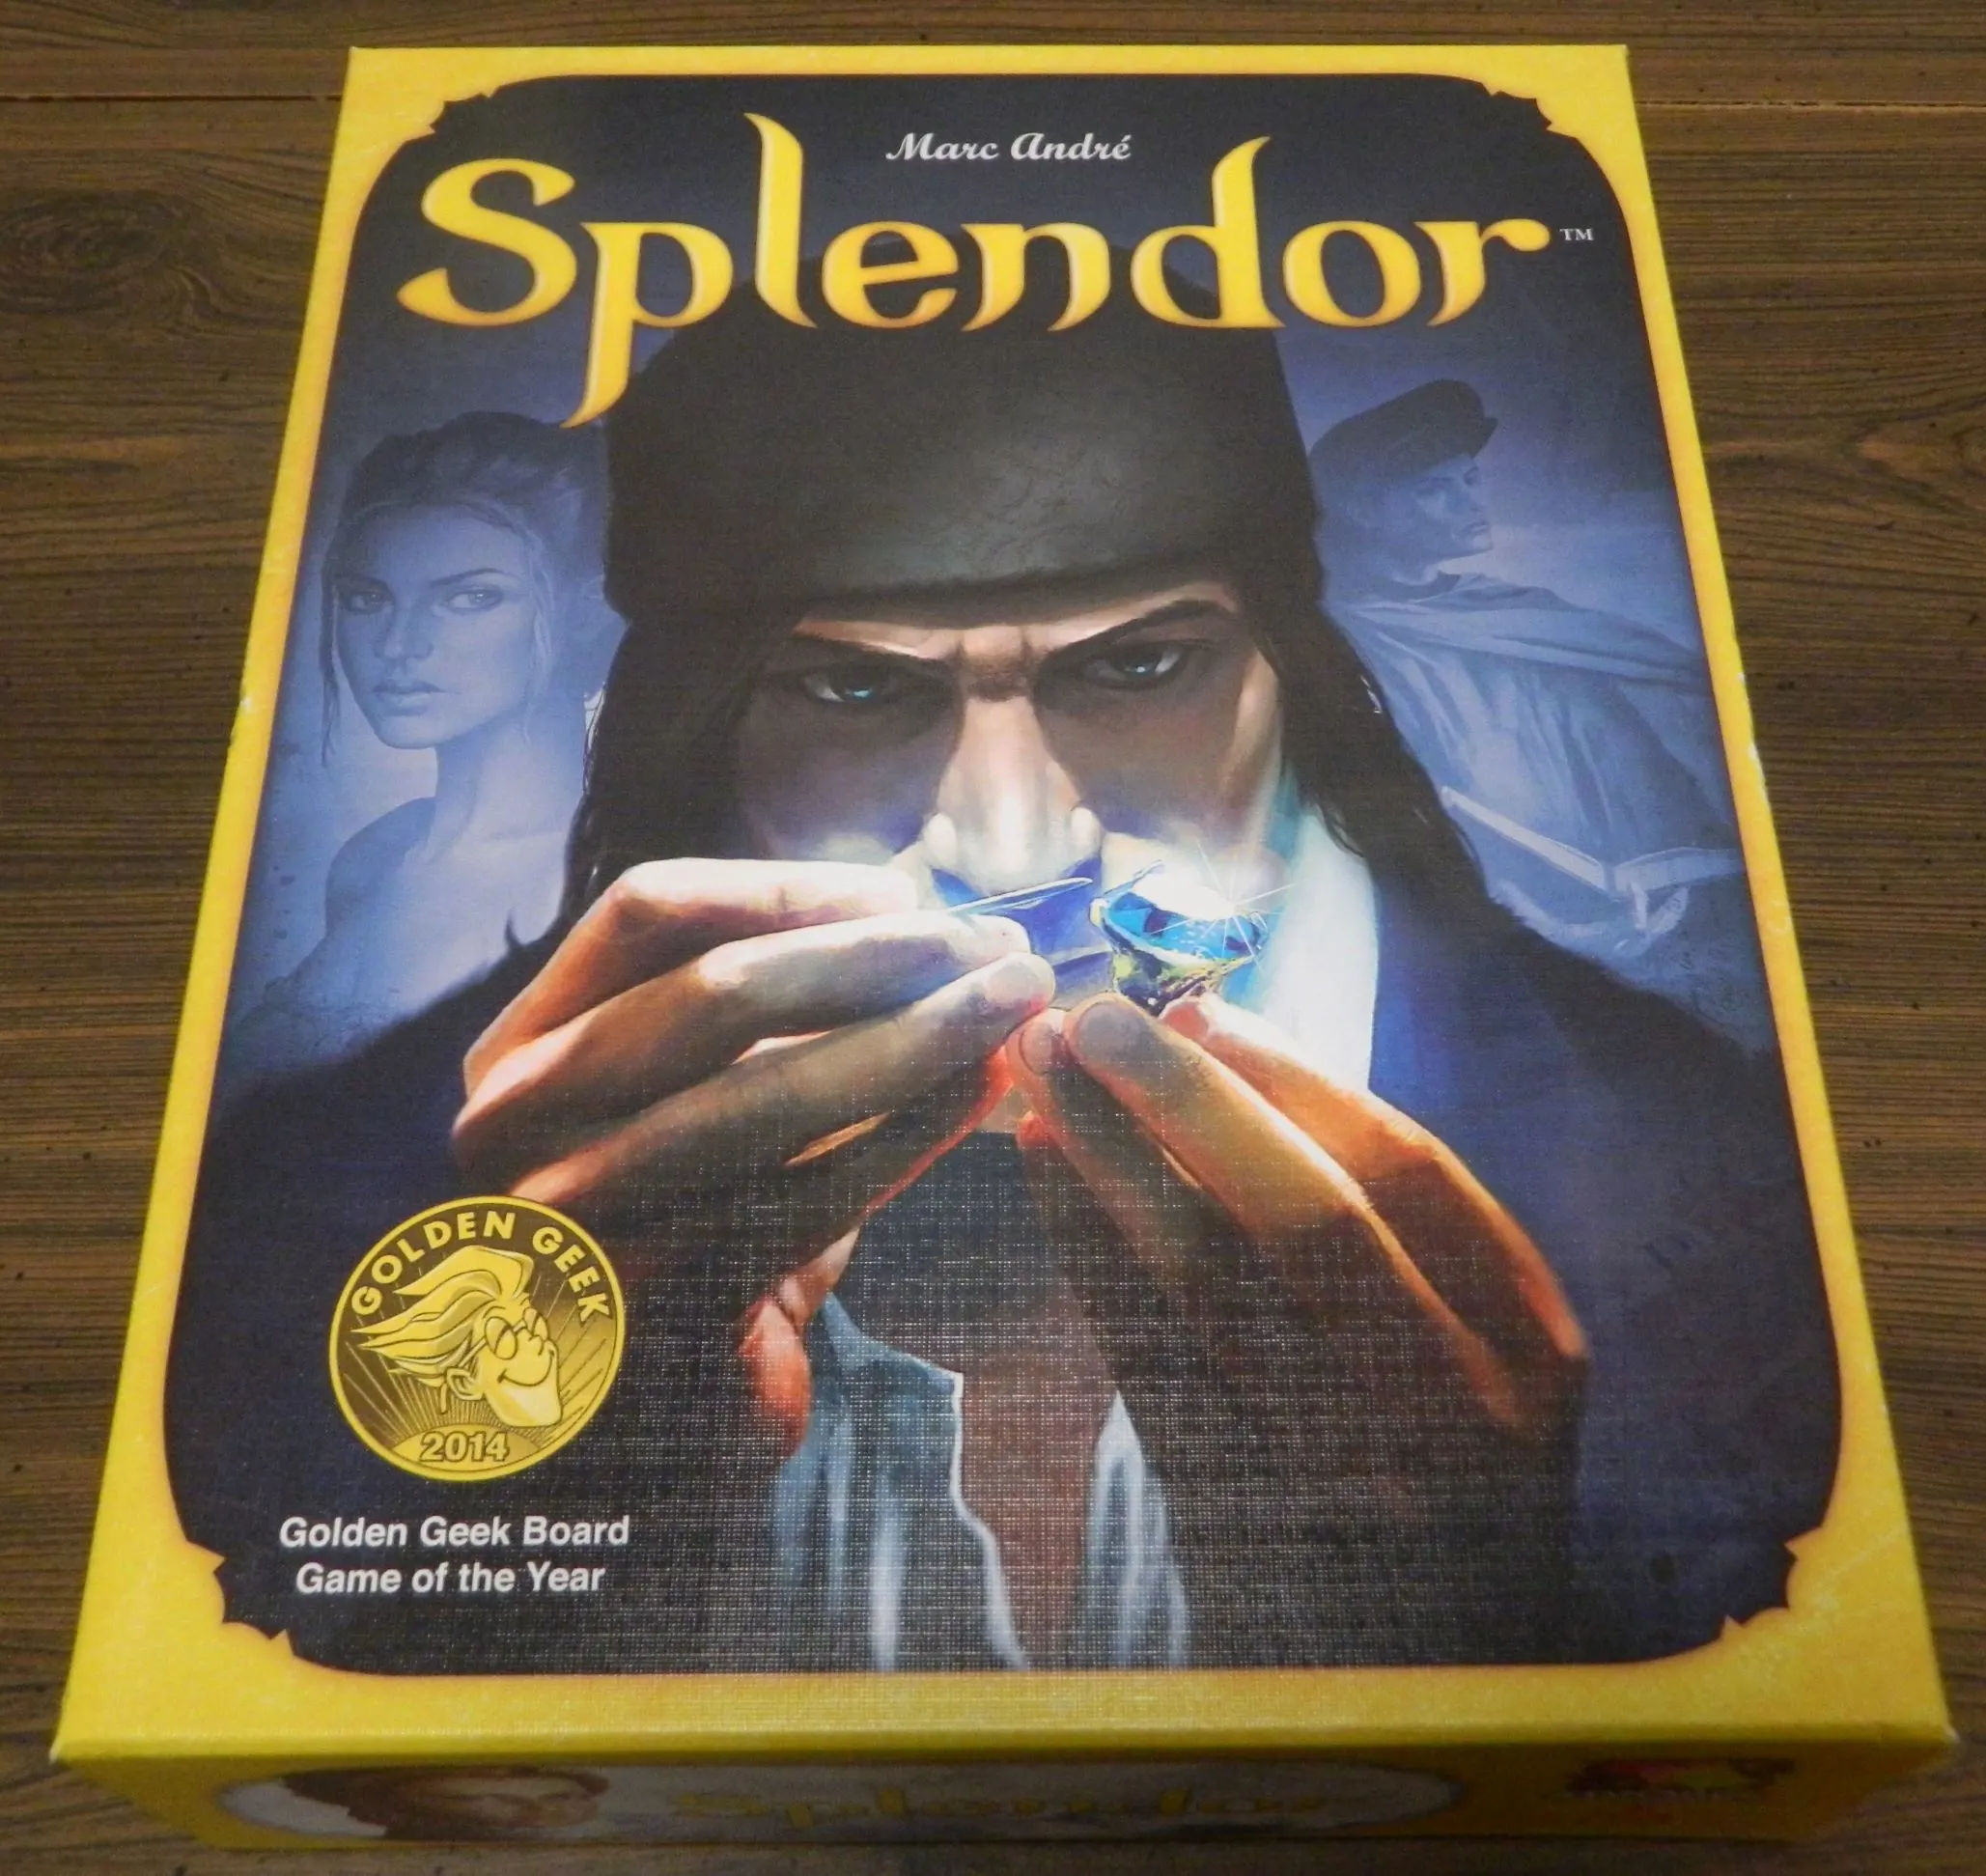 Box for Splendor